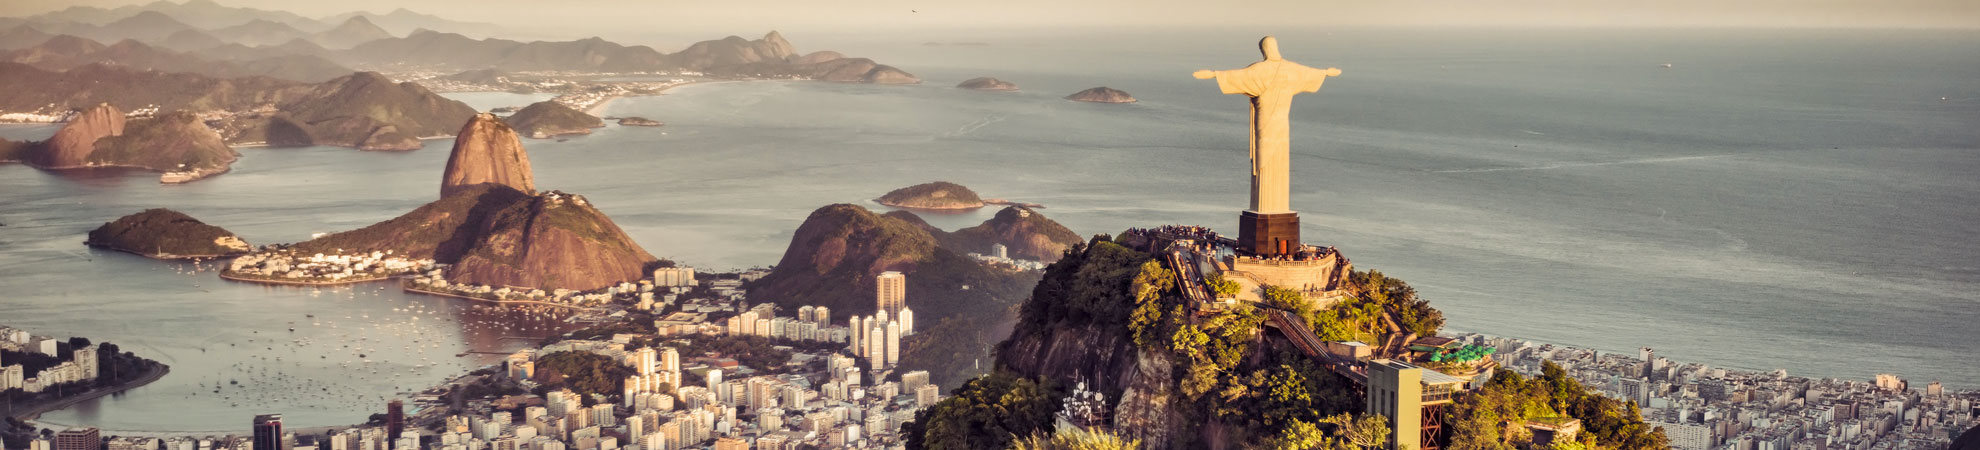 Aller au Brésil et à Rio en bus